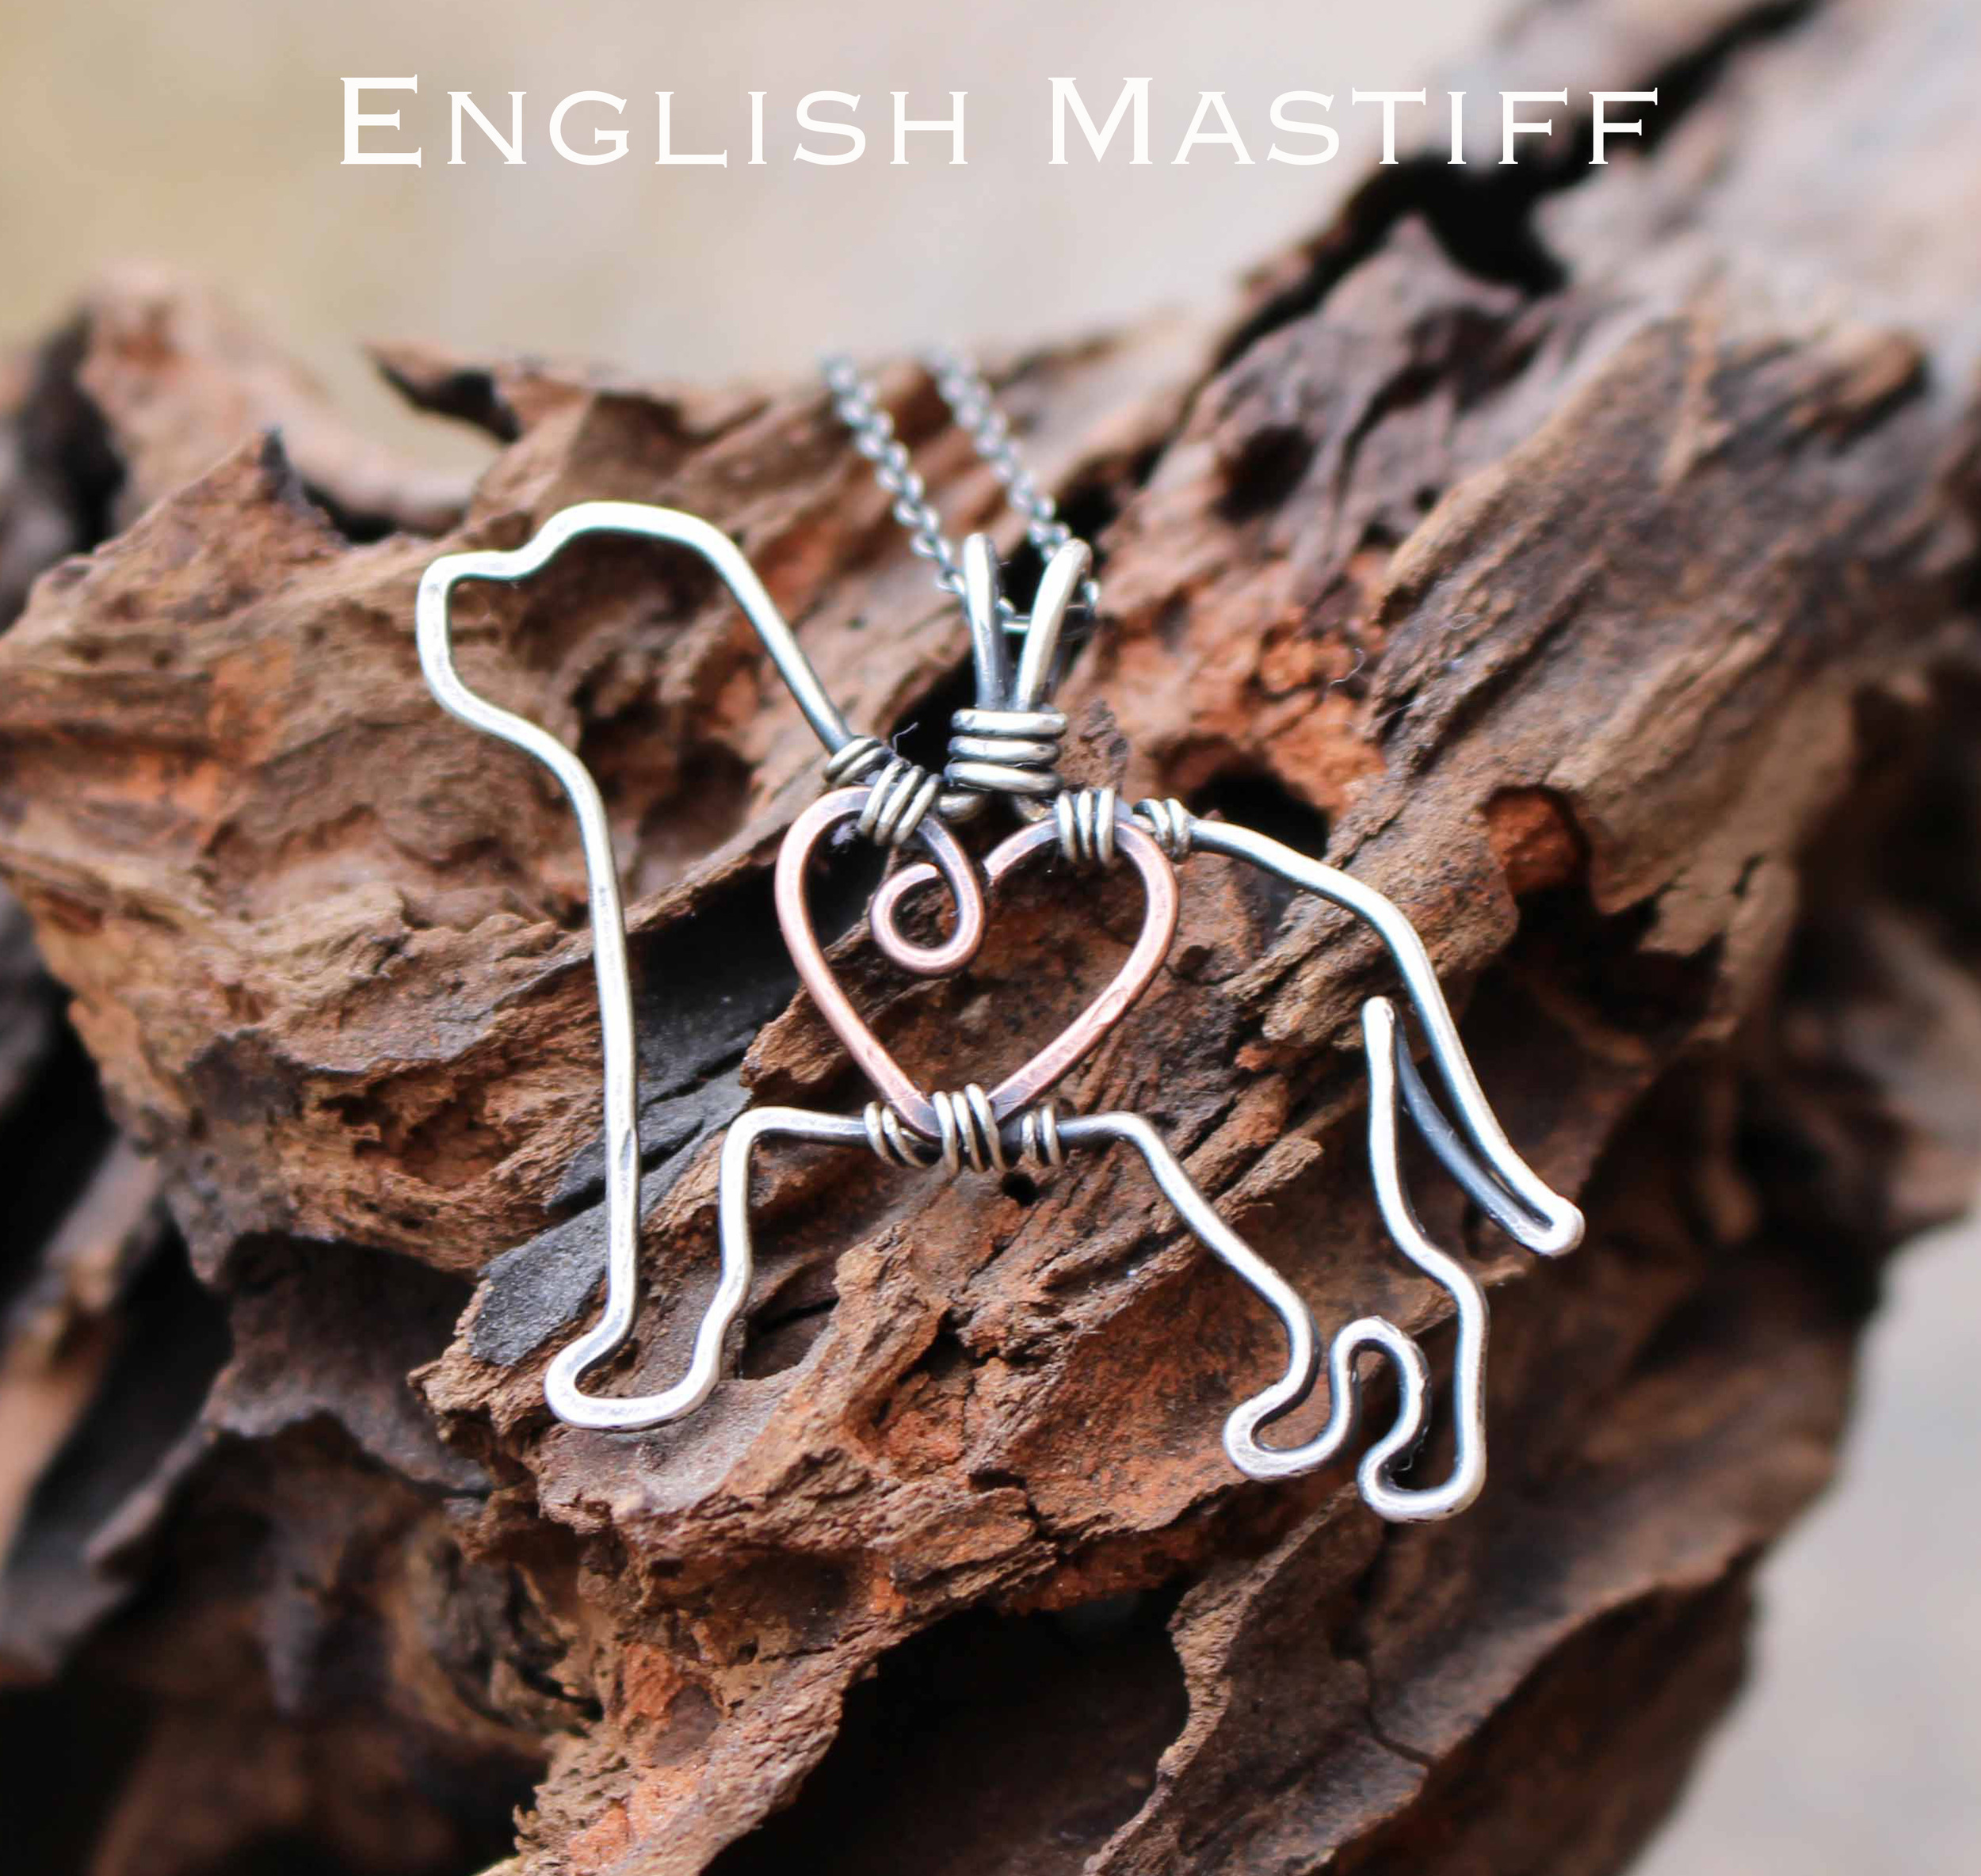 English mastiff.jpg